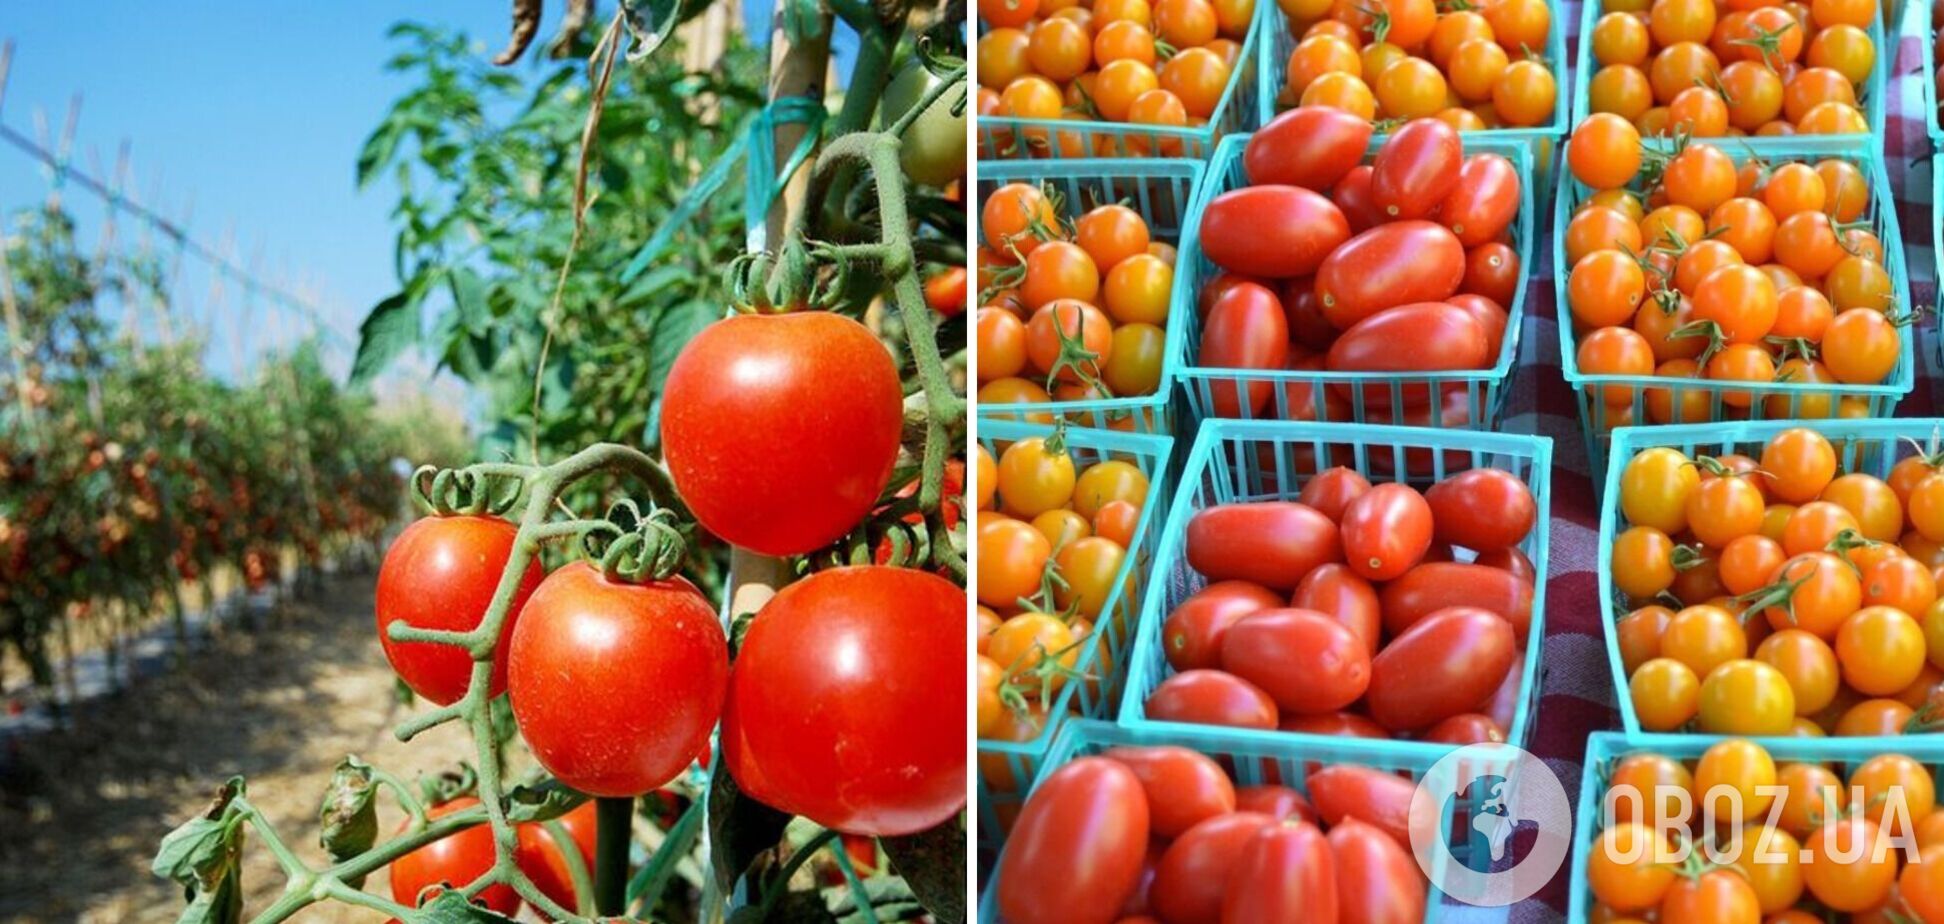 Удобрение для помидоров: элитный способ подкормить кусты, который стоит копейки